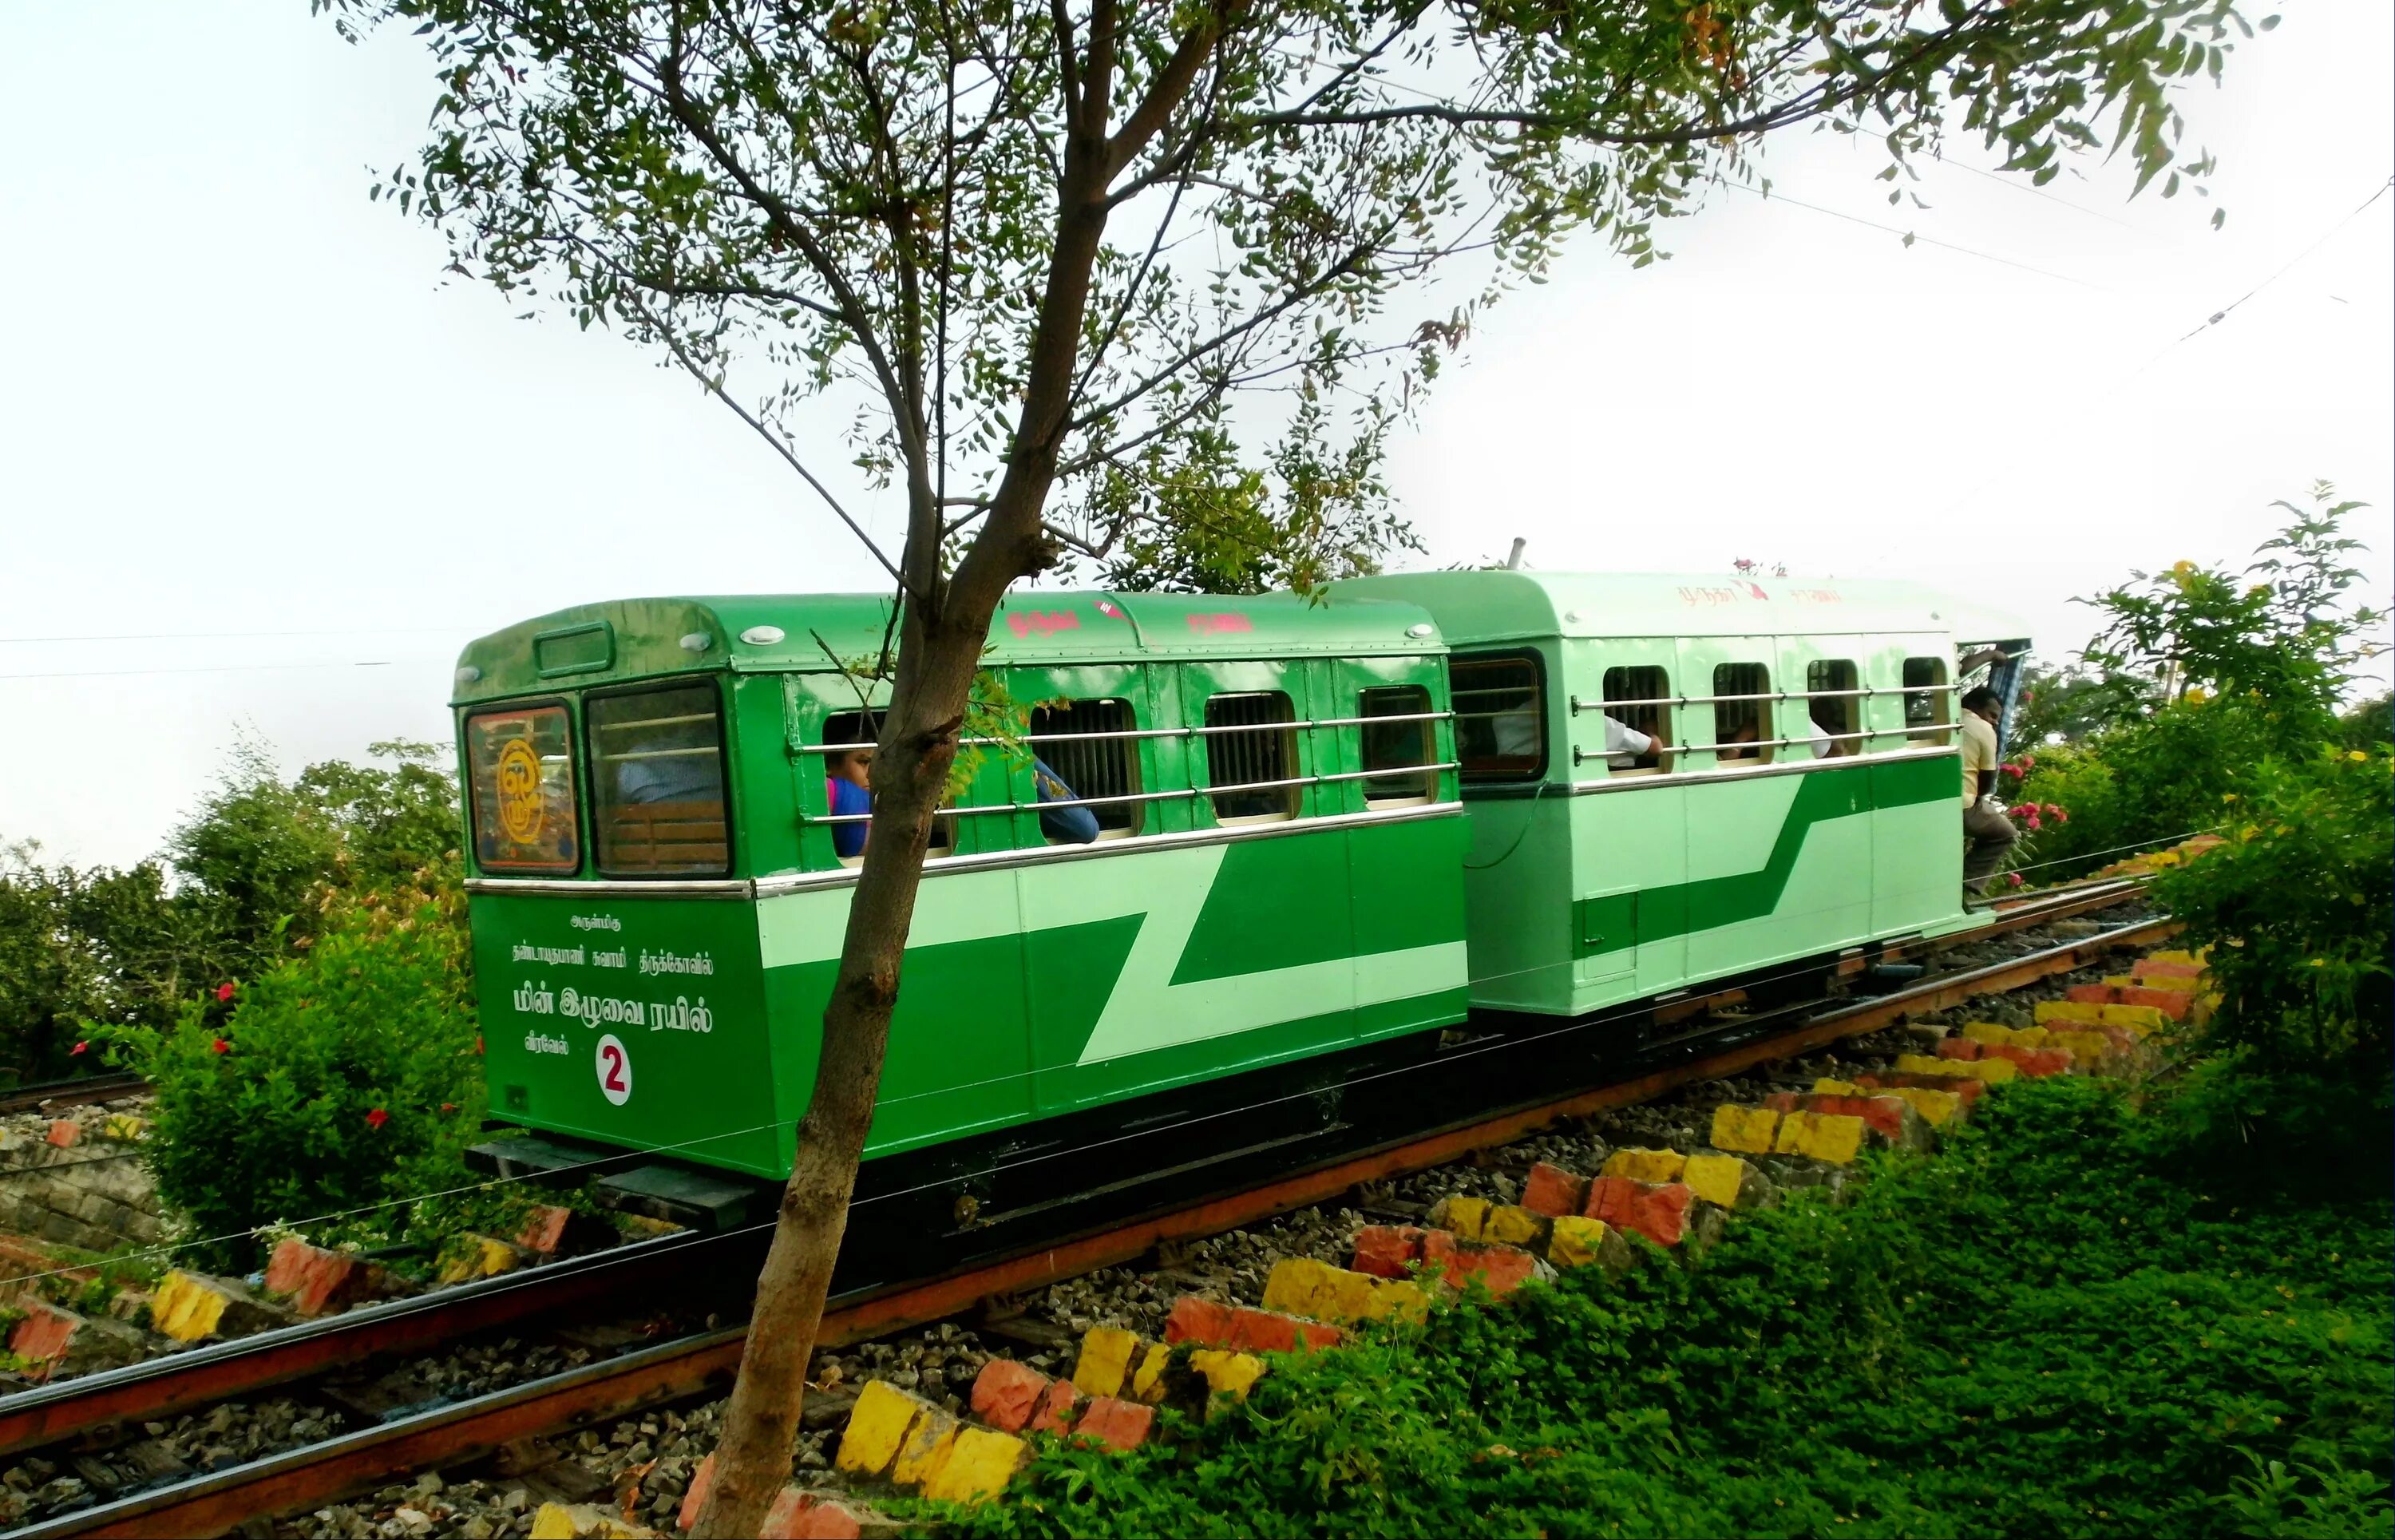 Зеленый поезд слова. Зеленый поезд. Зеленая электричка. Маленький поезд. Зеленый транспорт.